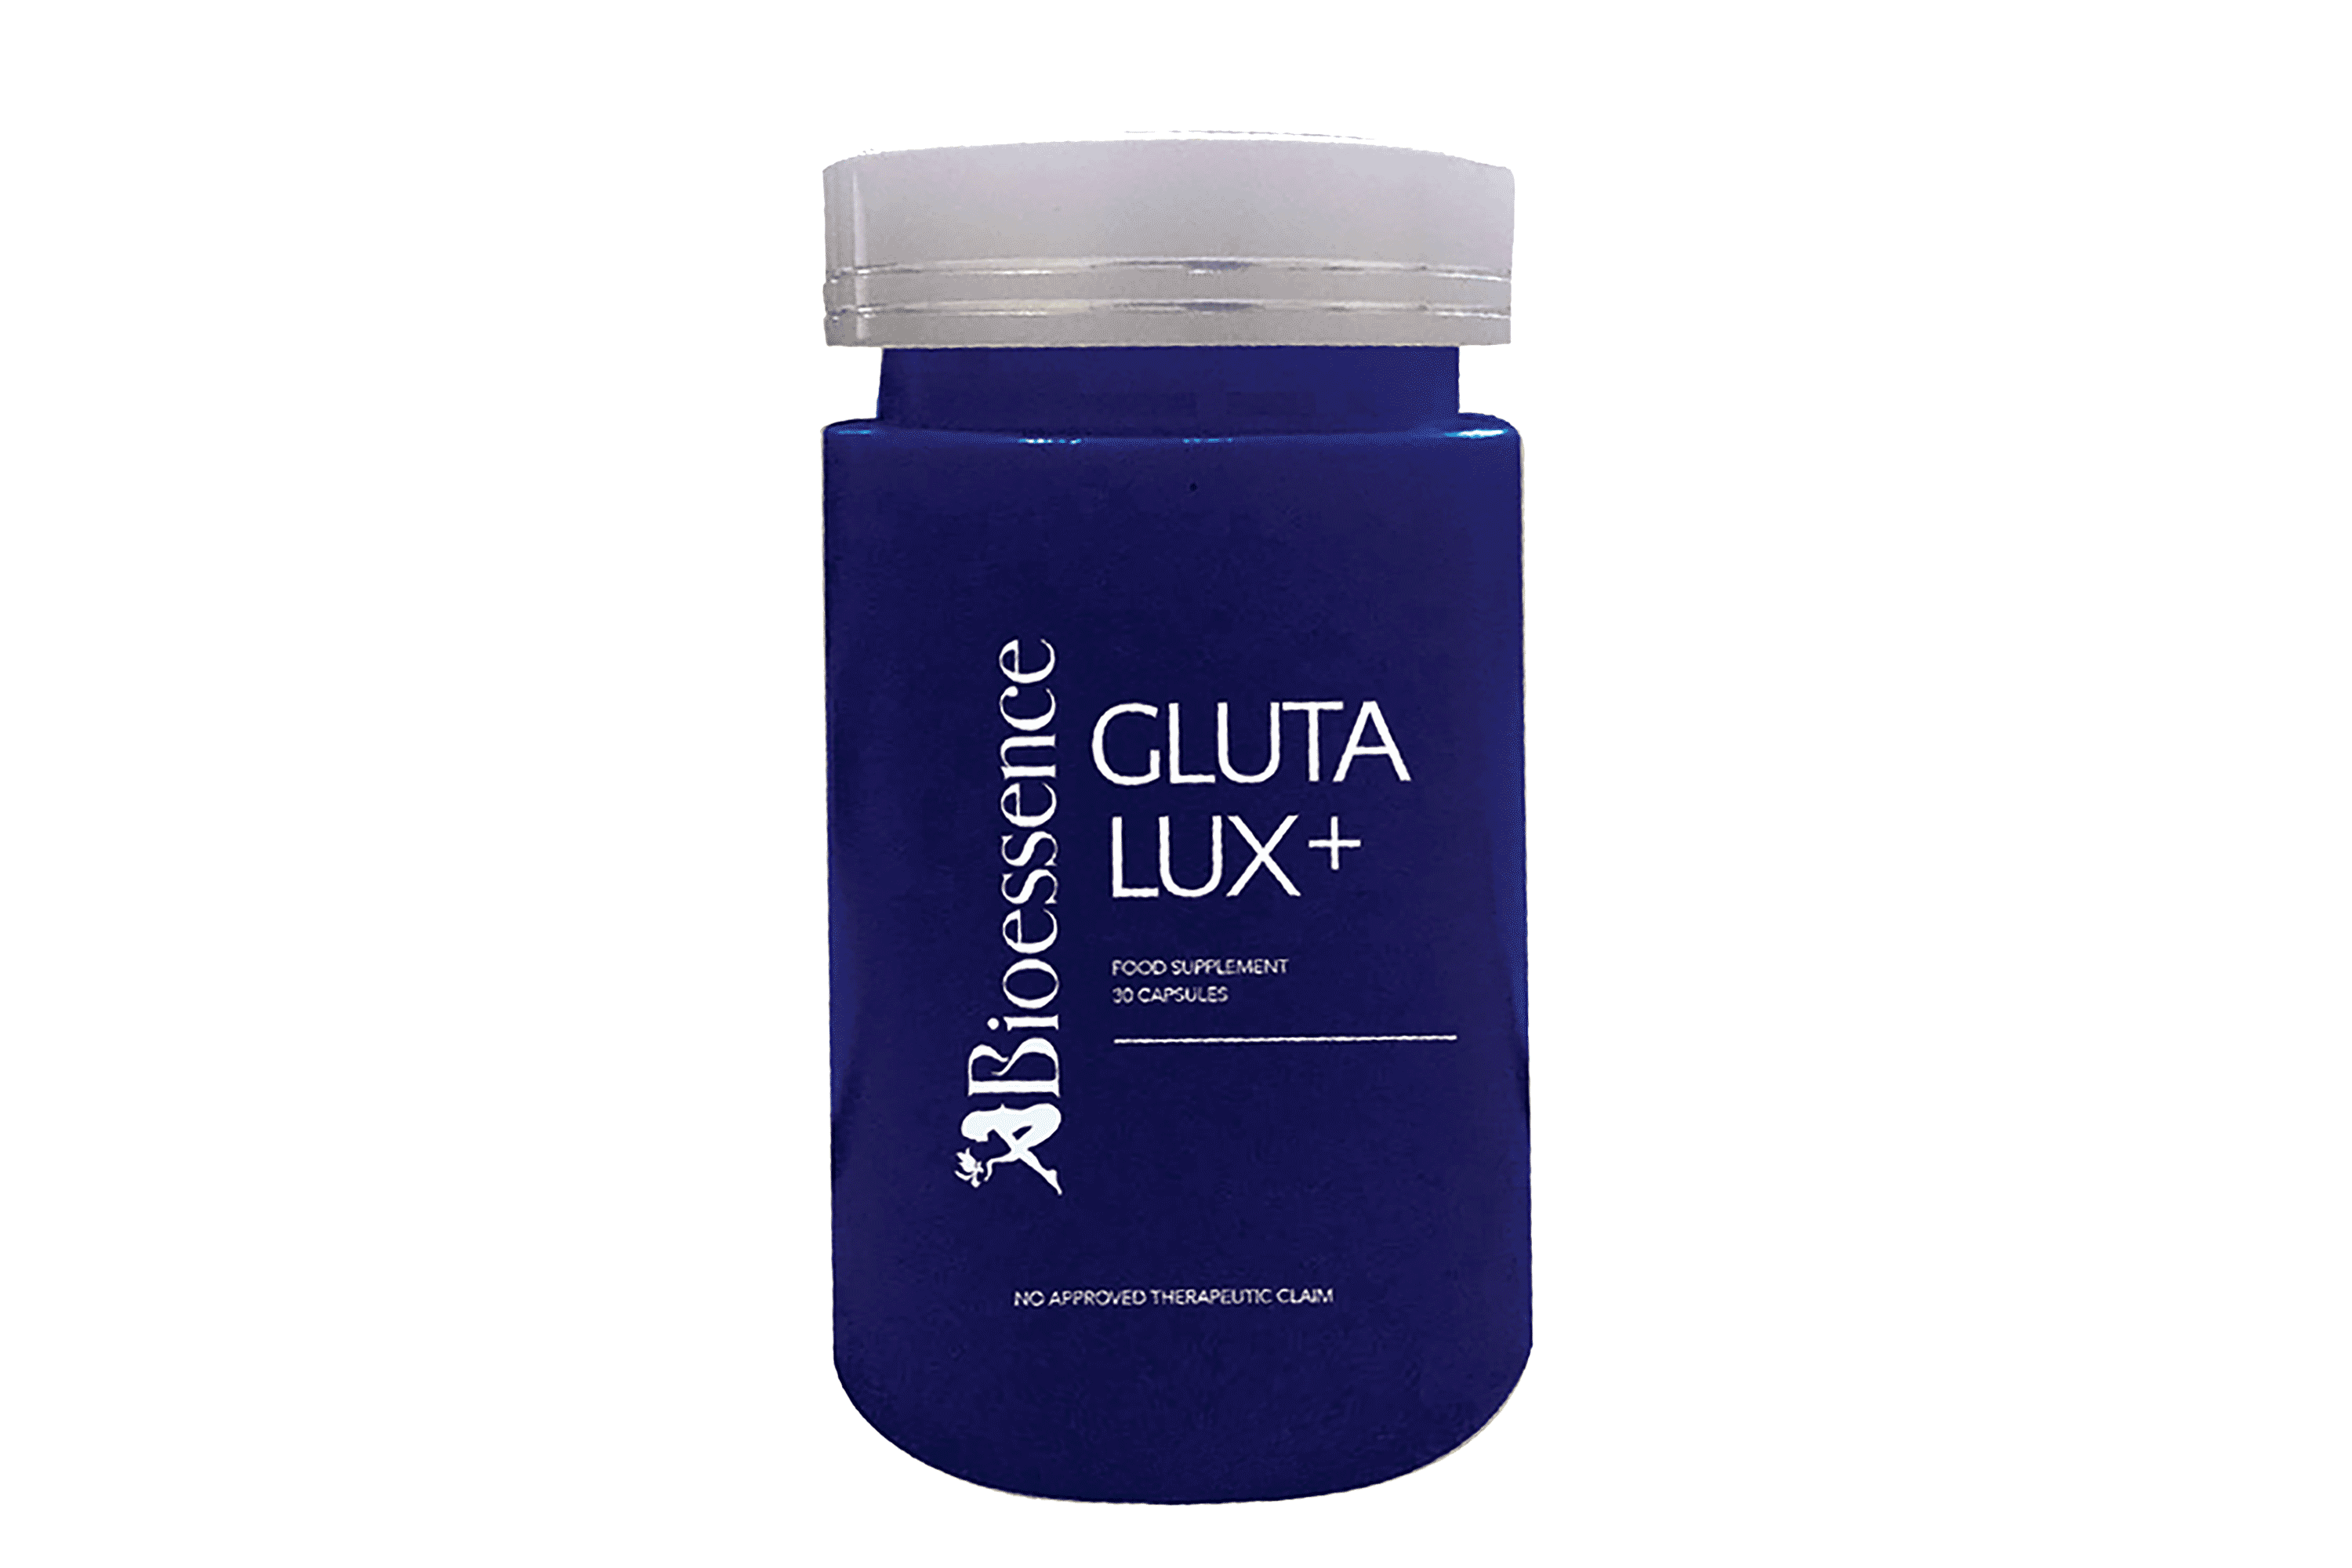 Gluta Lux+